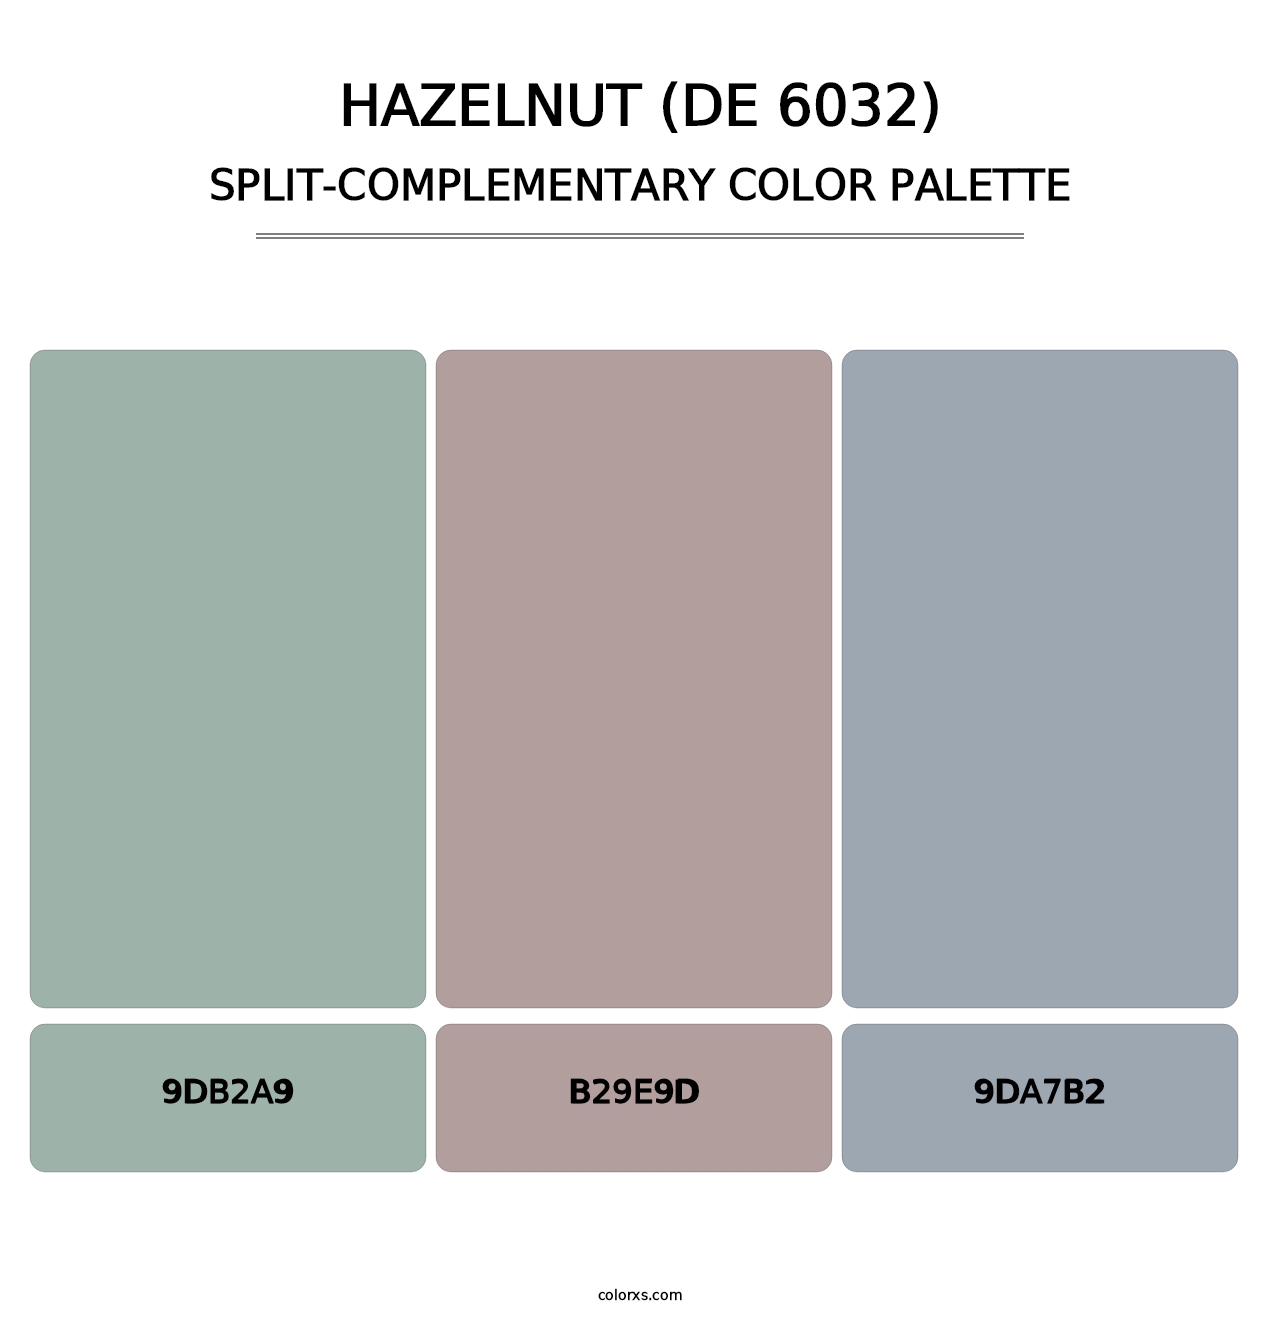 Hazelnut (DE 6032) - Split-Complementary Color Palette